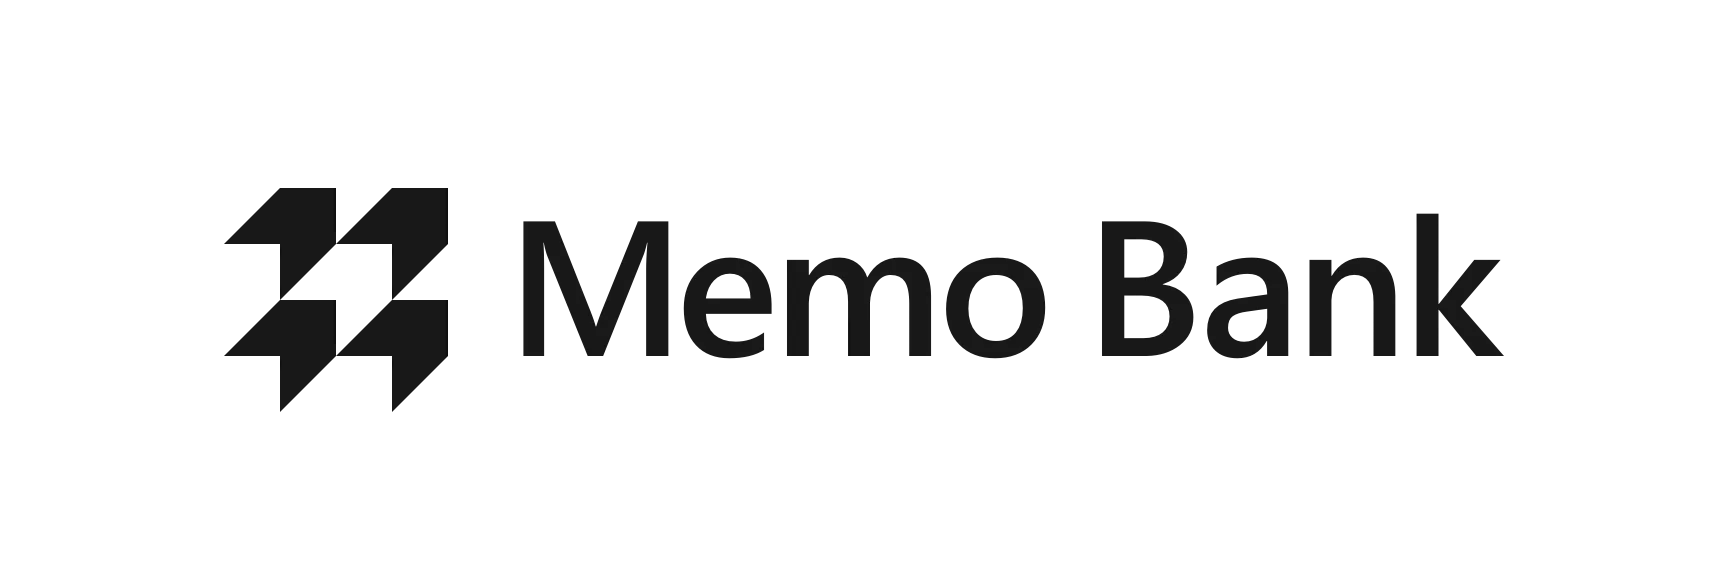 Memo bank logo